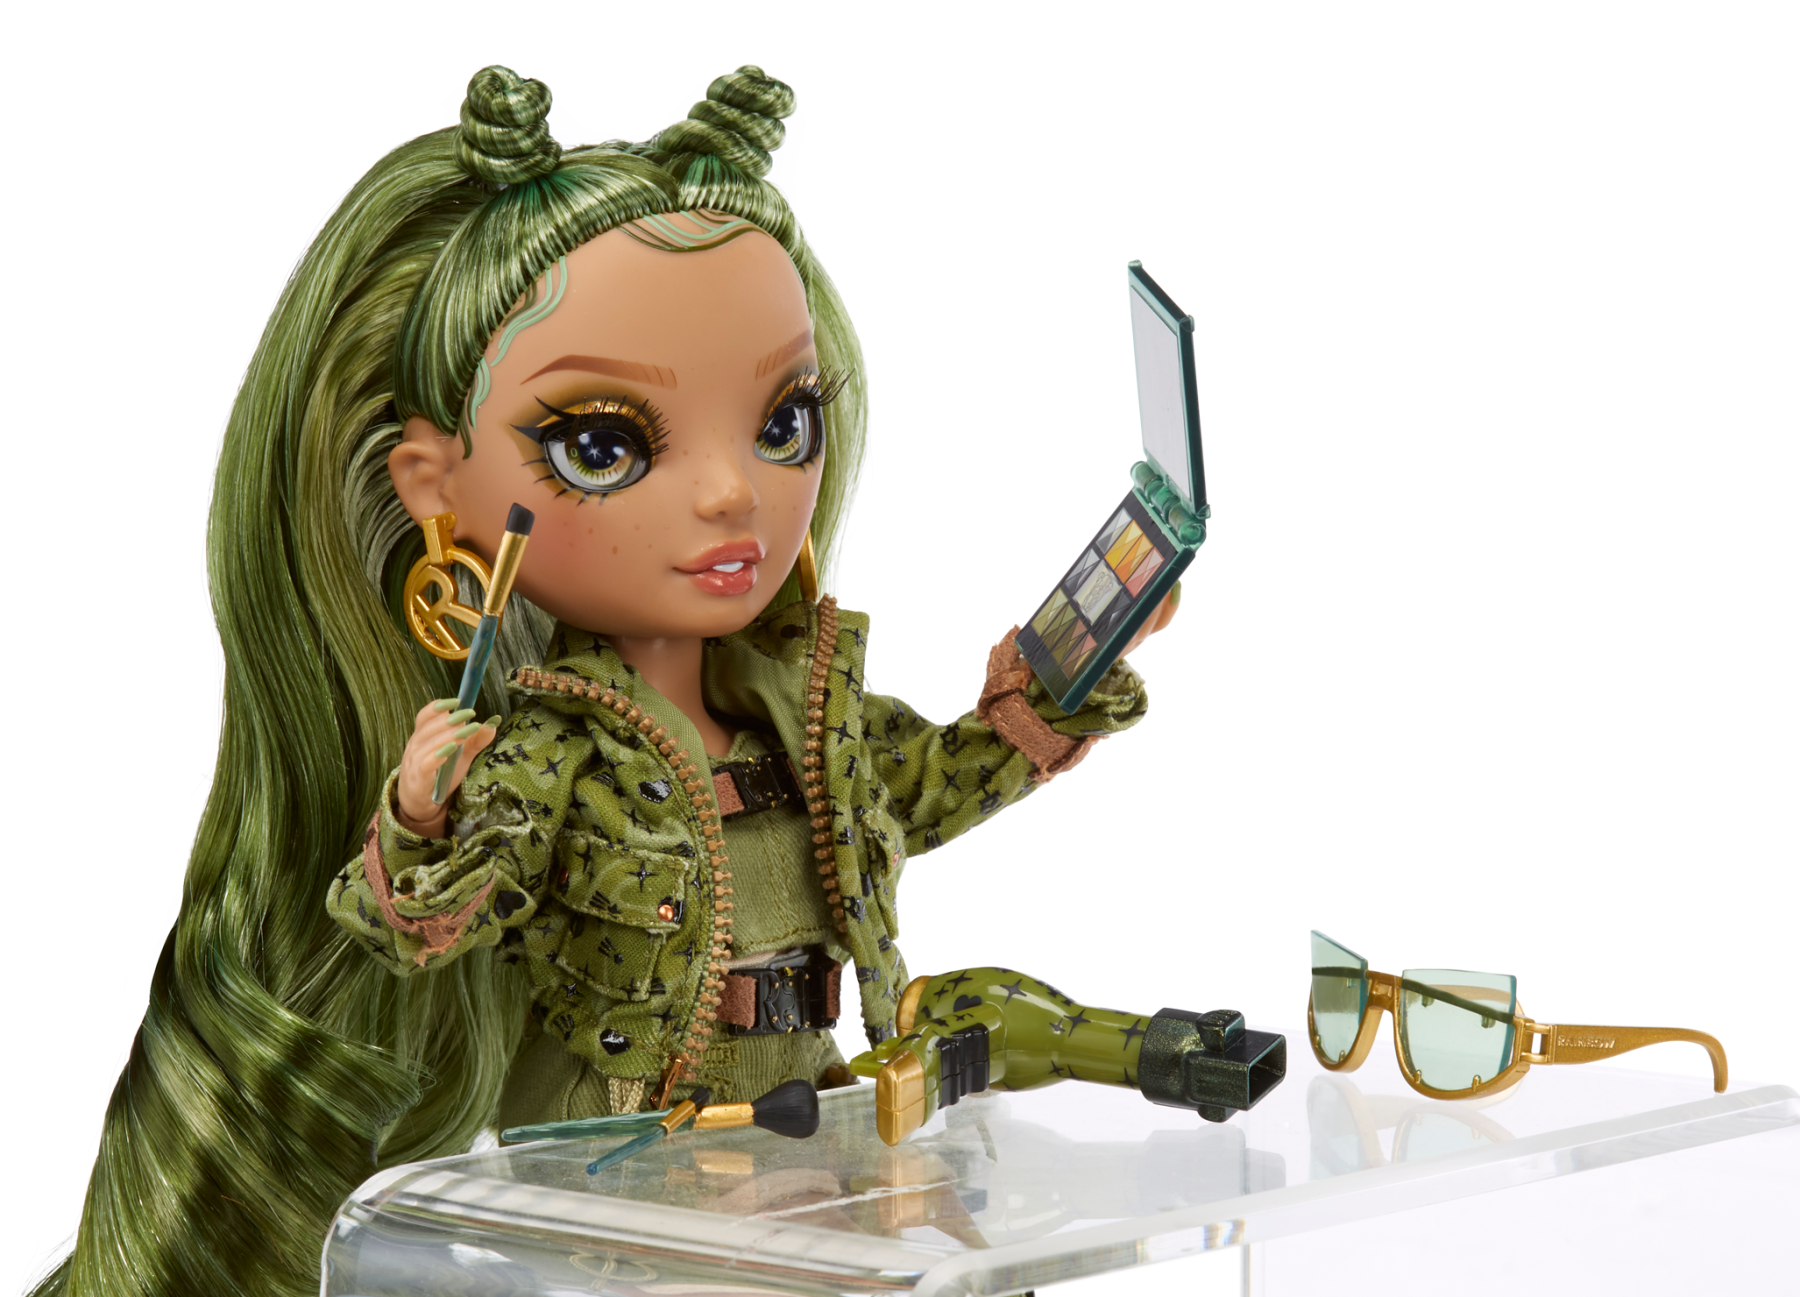 Rainbow high fashion doll serie 5: olivia woods. bambola verde mimetico con vestito alla moda e oltre 10 accessori di gioco colorati. - Rainbow High